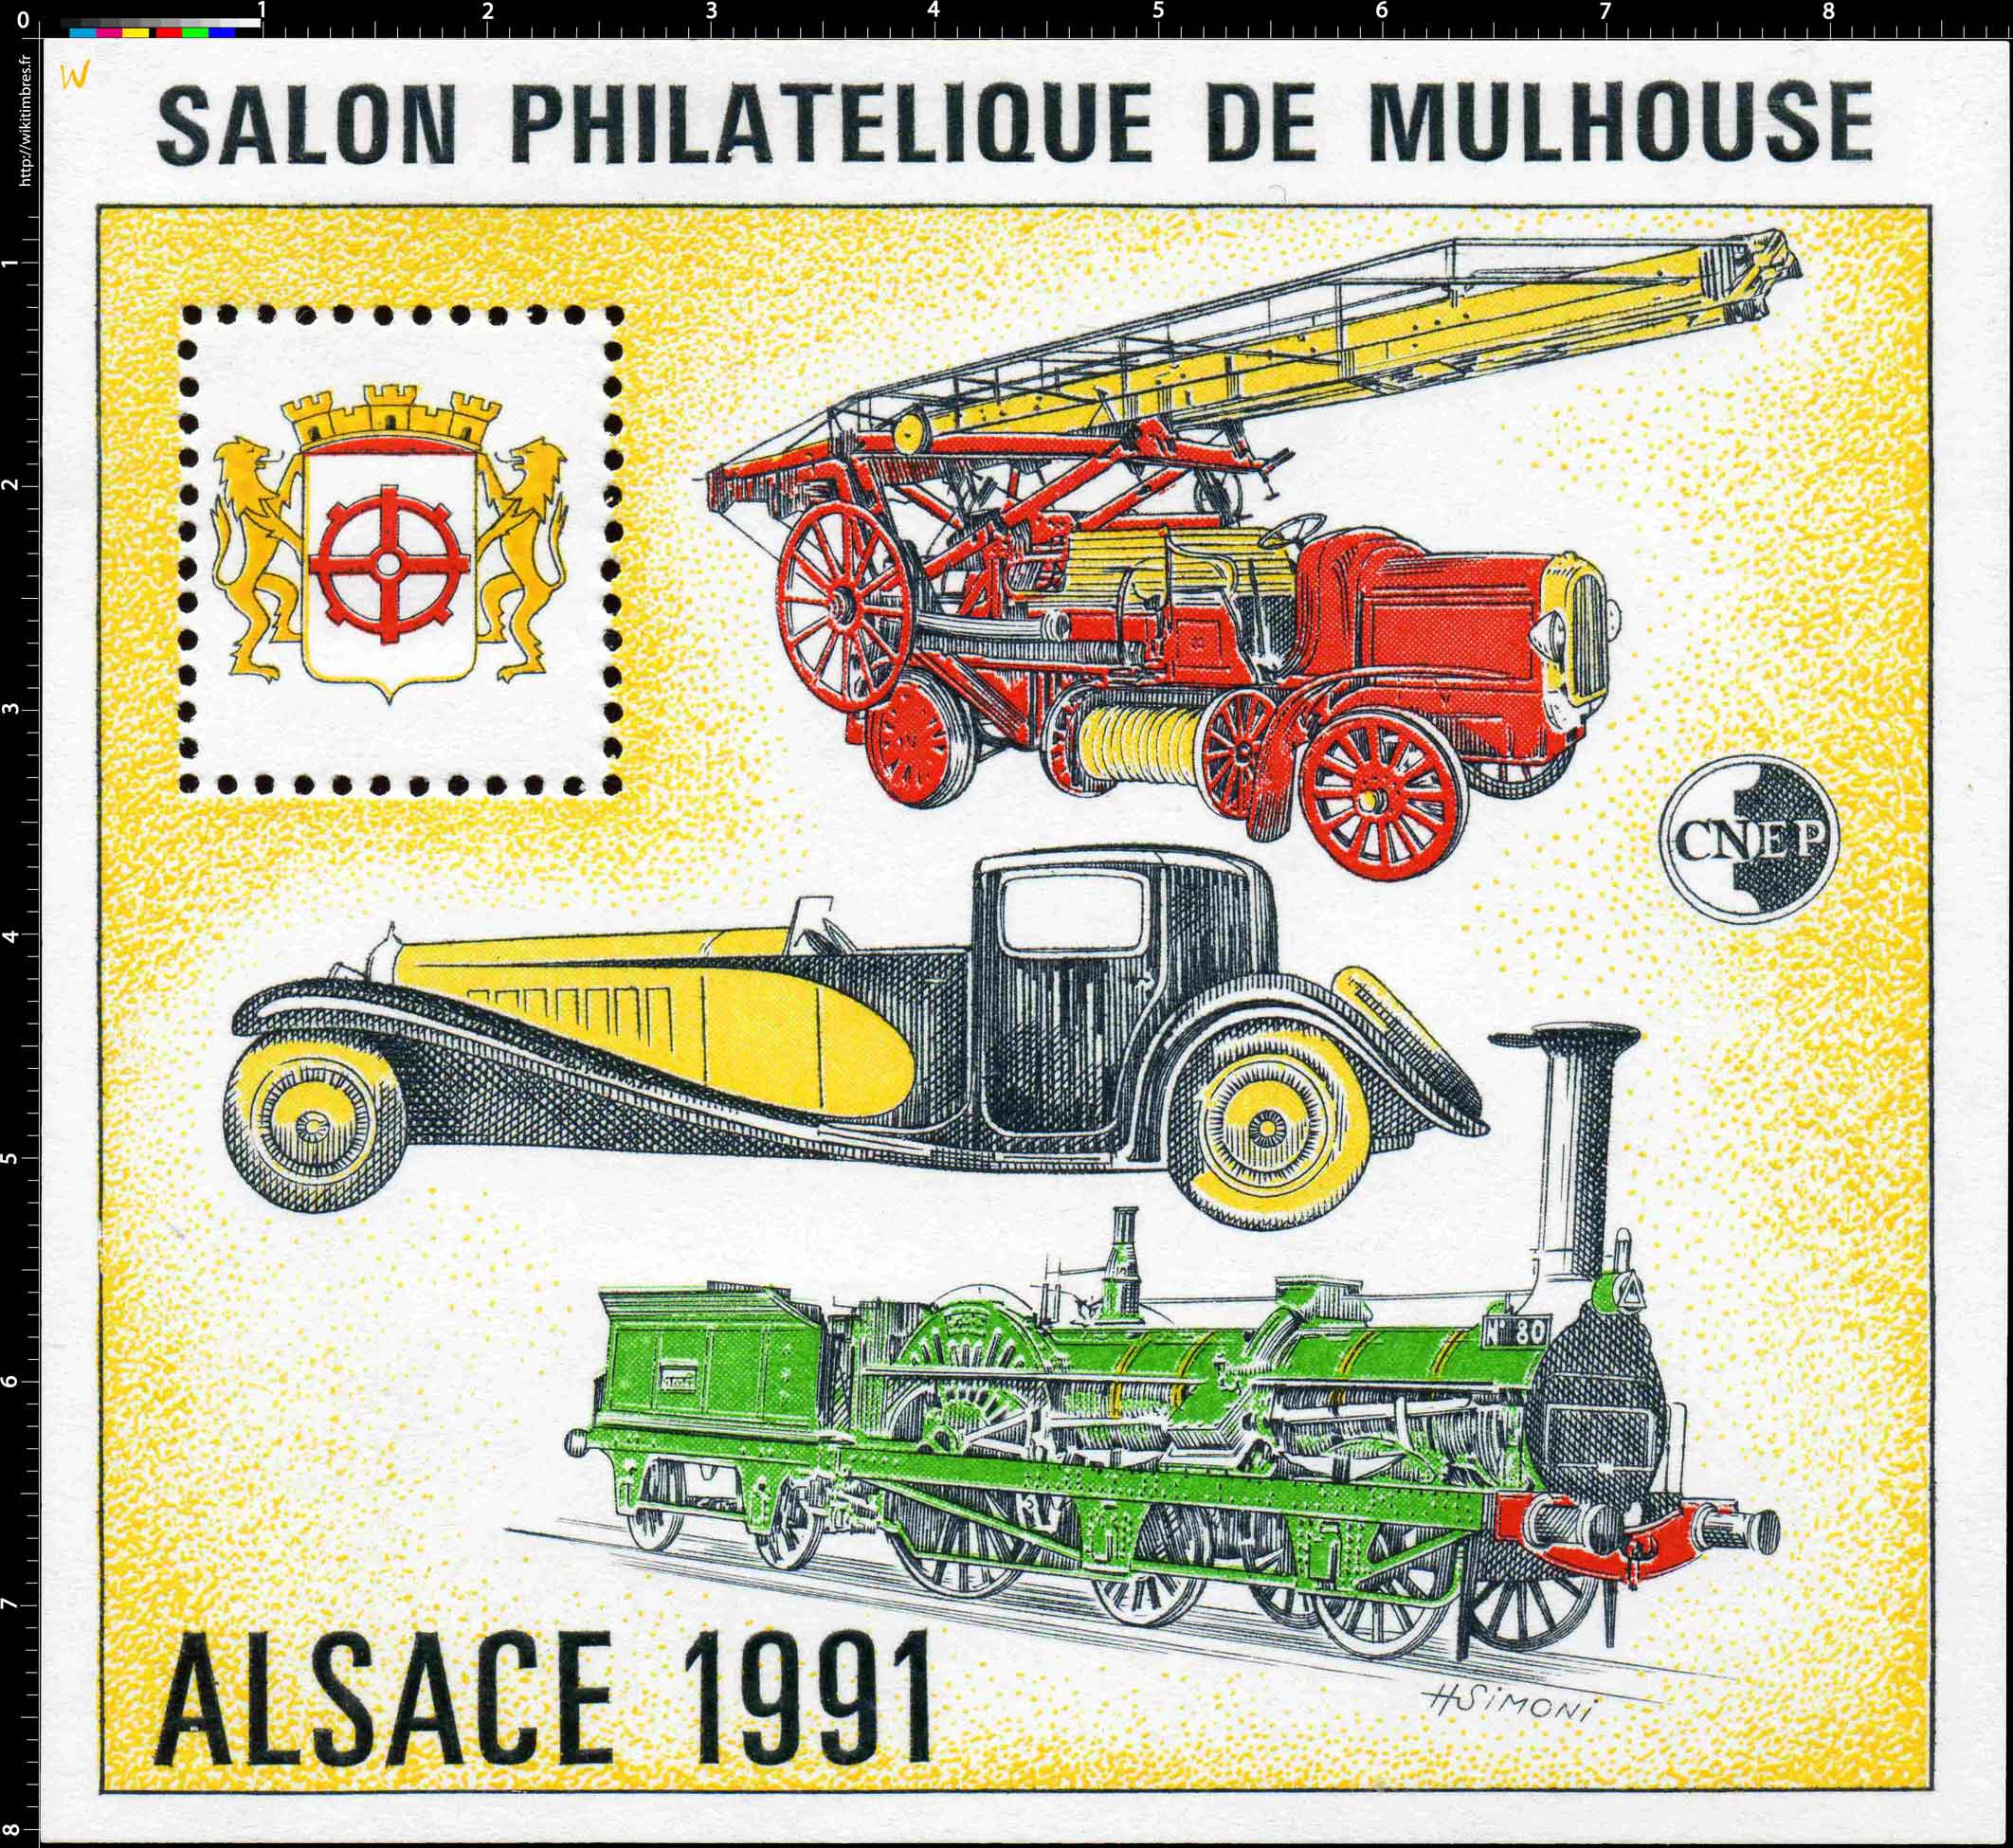 1991 Alsace Salon philatélique de Mulhouse CNEP